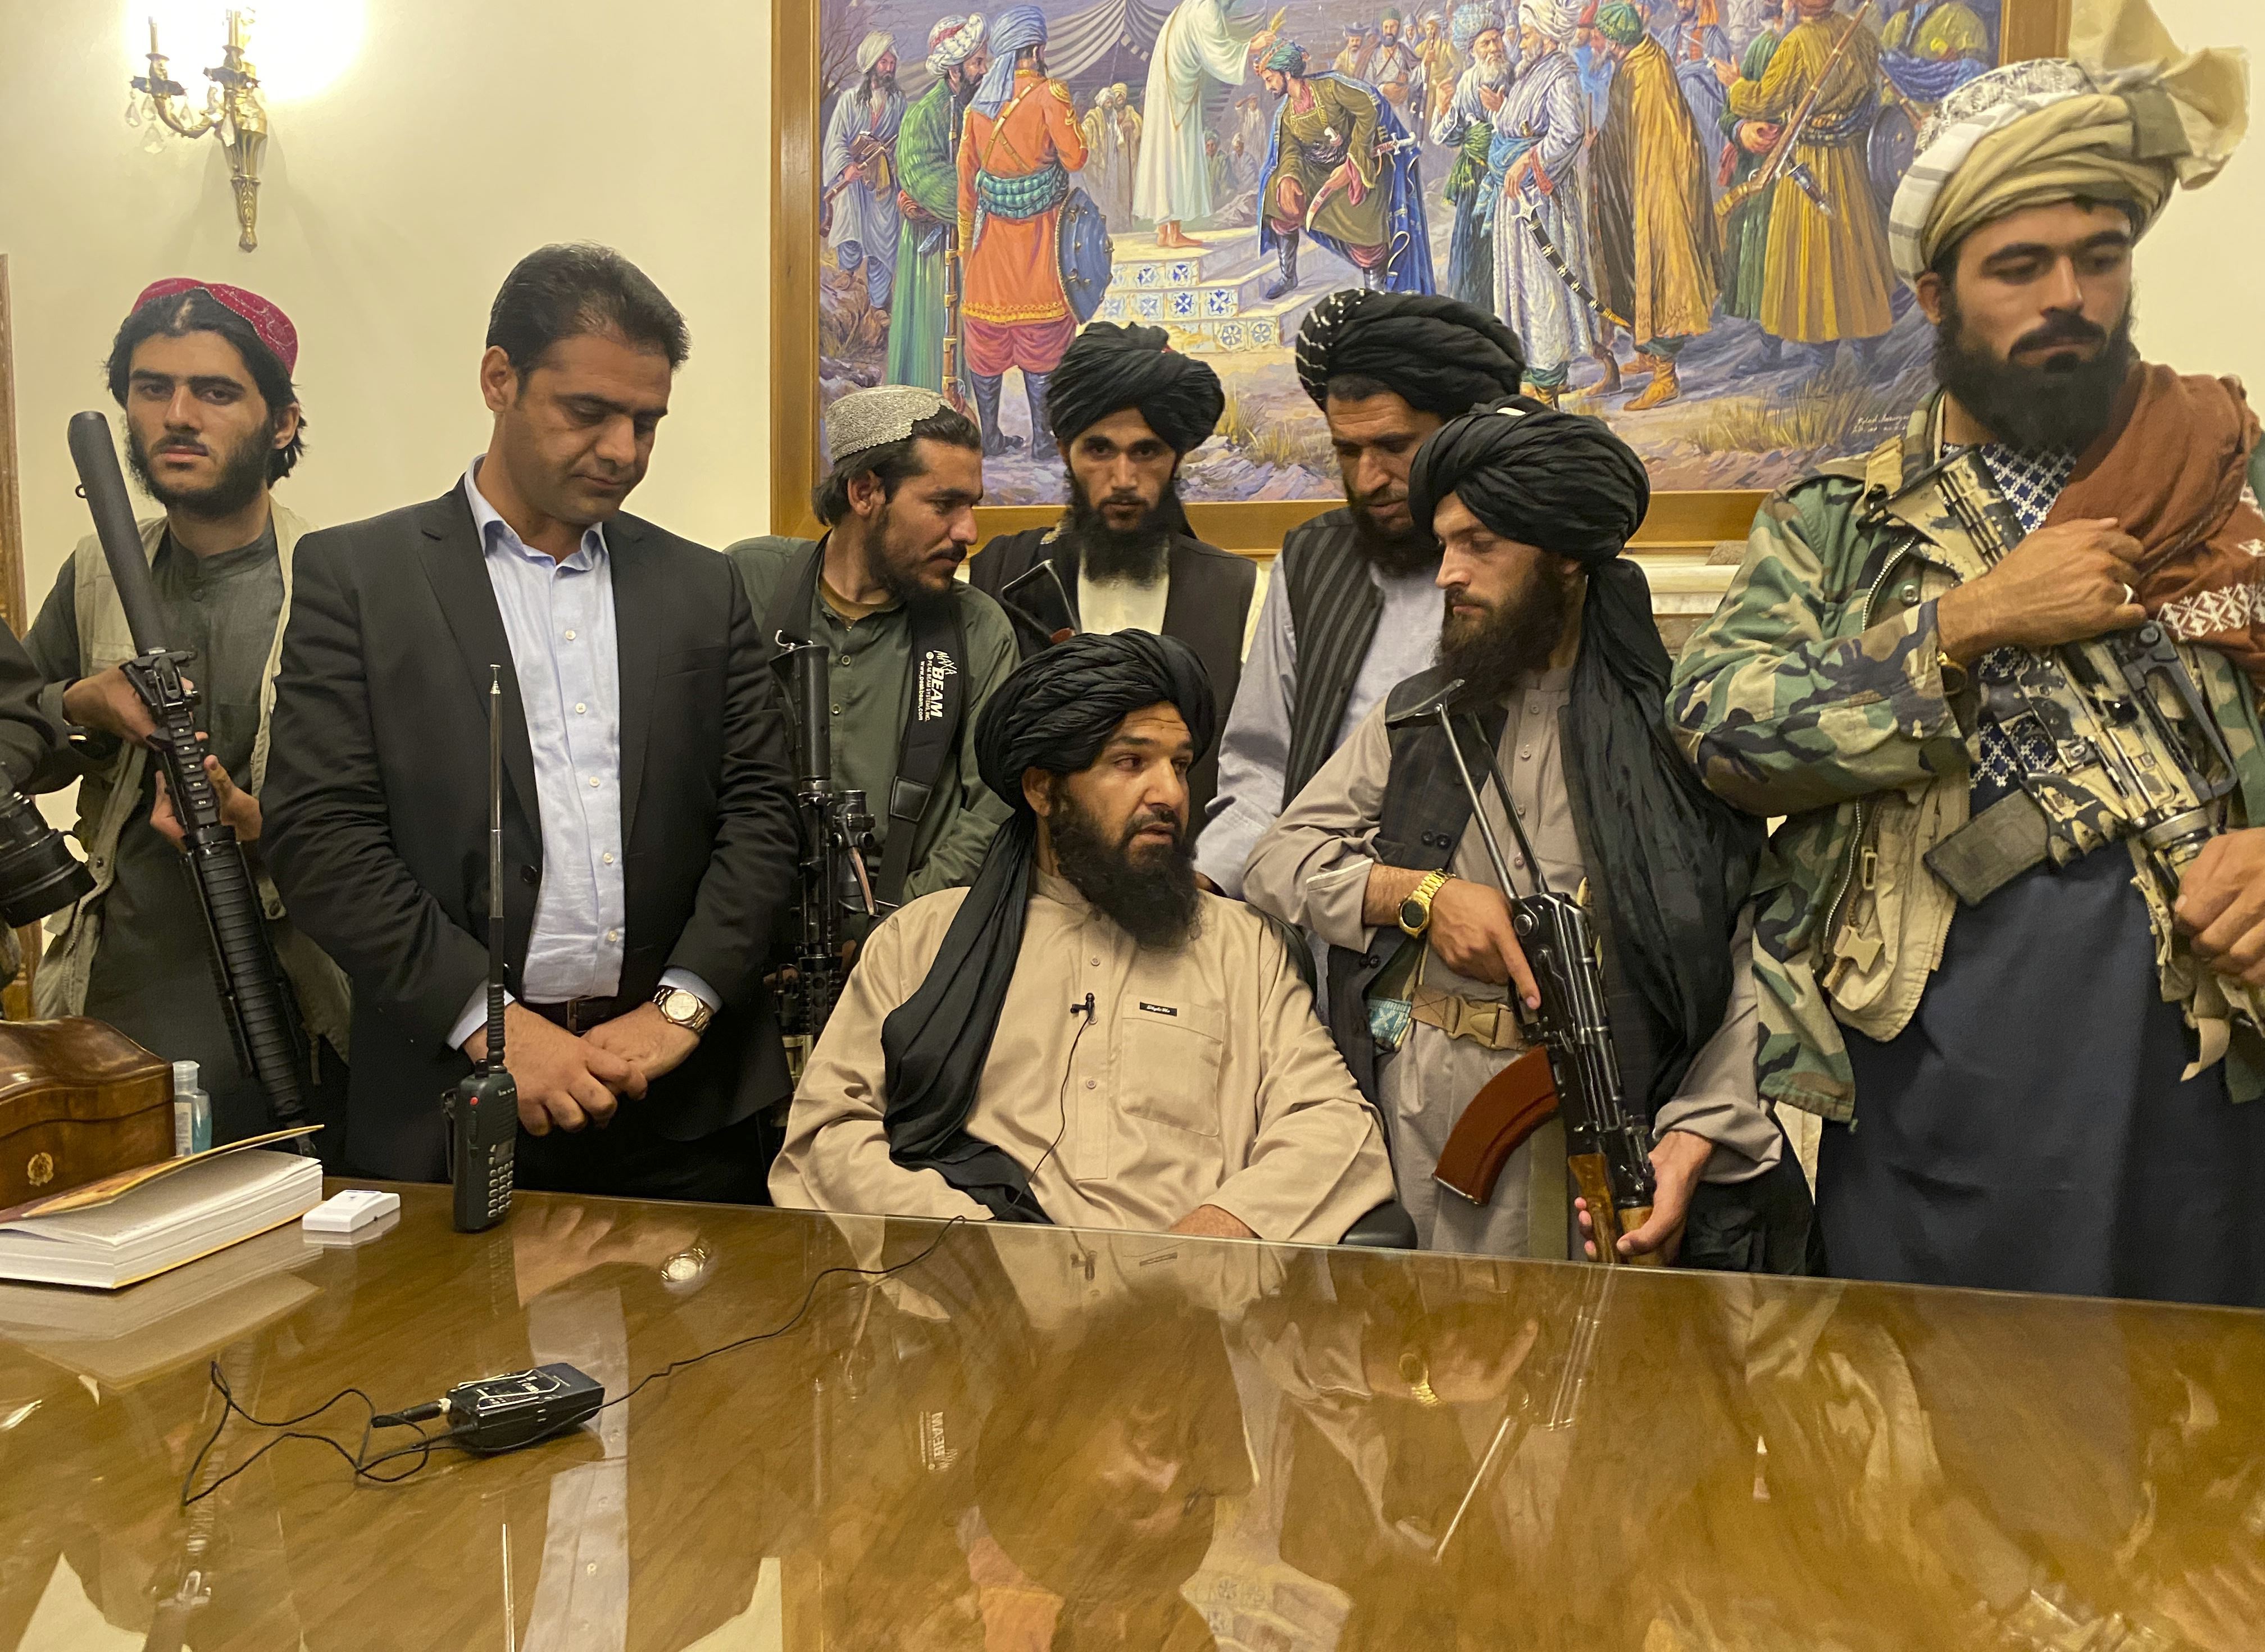 من هي حركة طالبان؟ وماذا يحدث في أفغانستان؟